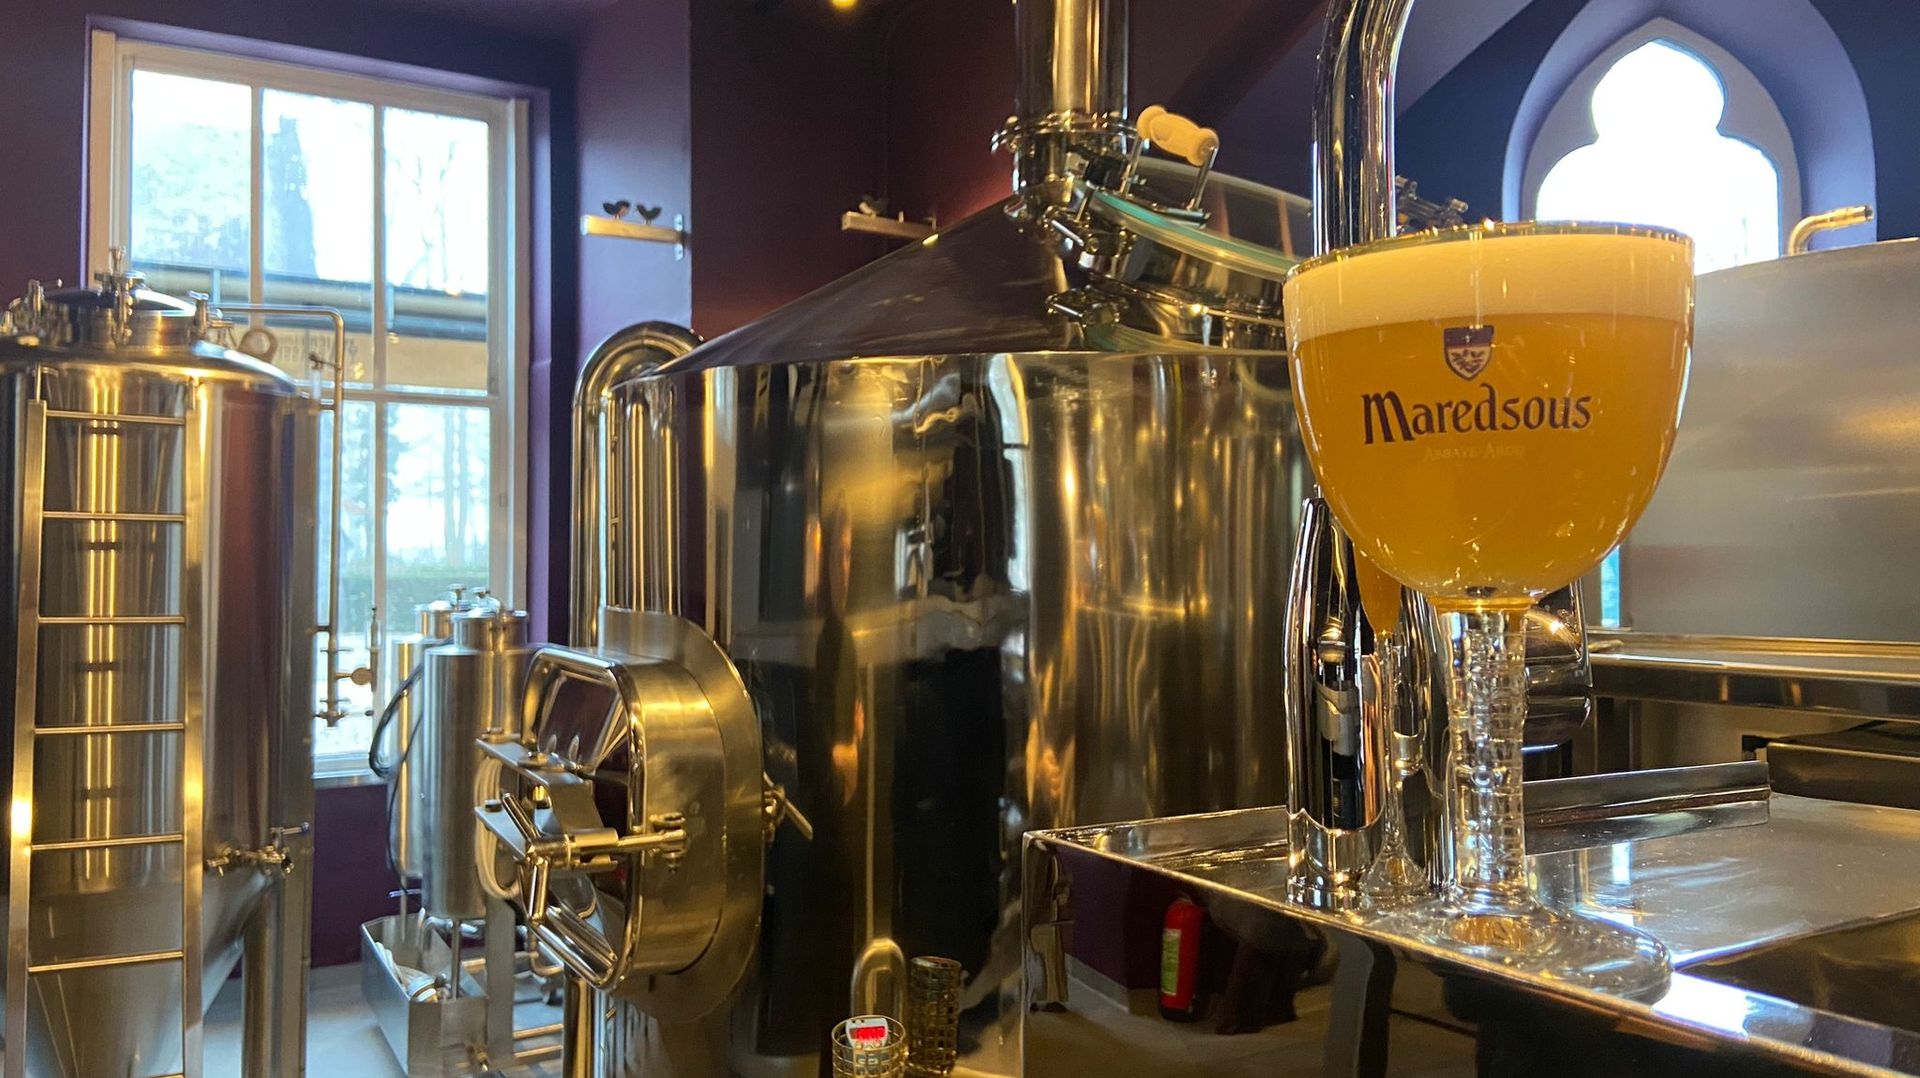 Une bière sera enfin brassée à l’abbaye de Maredsous mais pas une trappiste. Photo d’illustration.